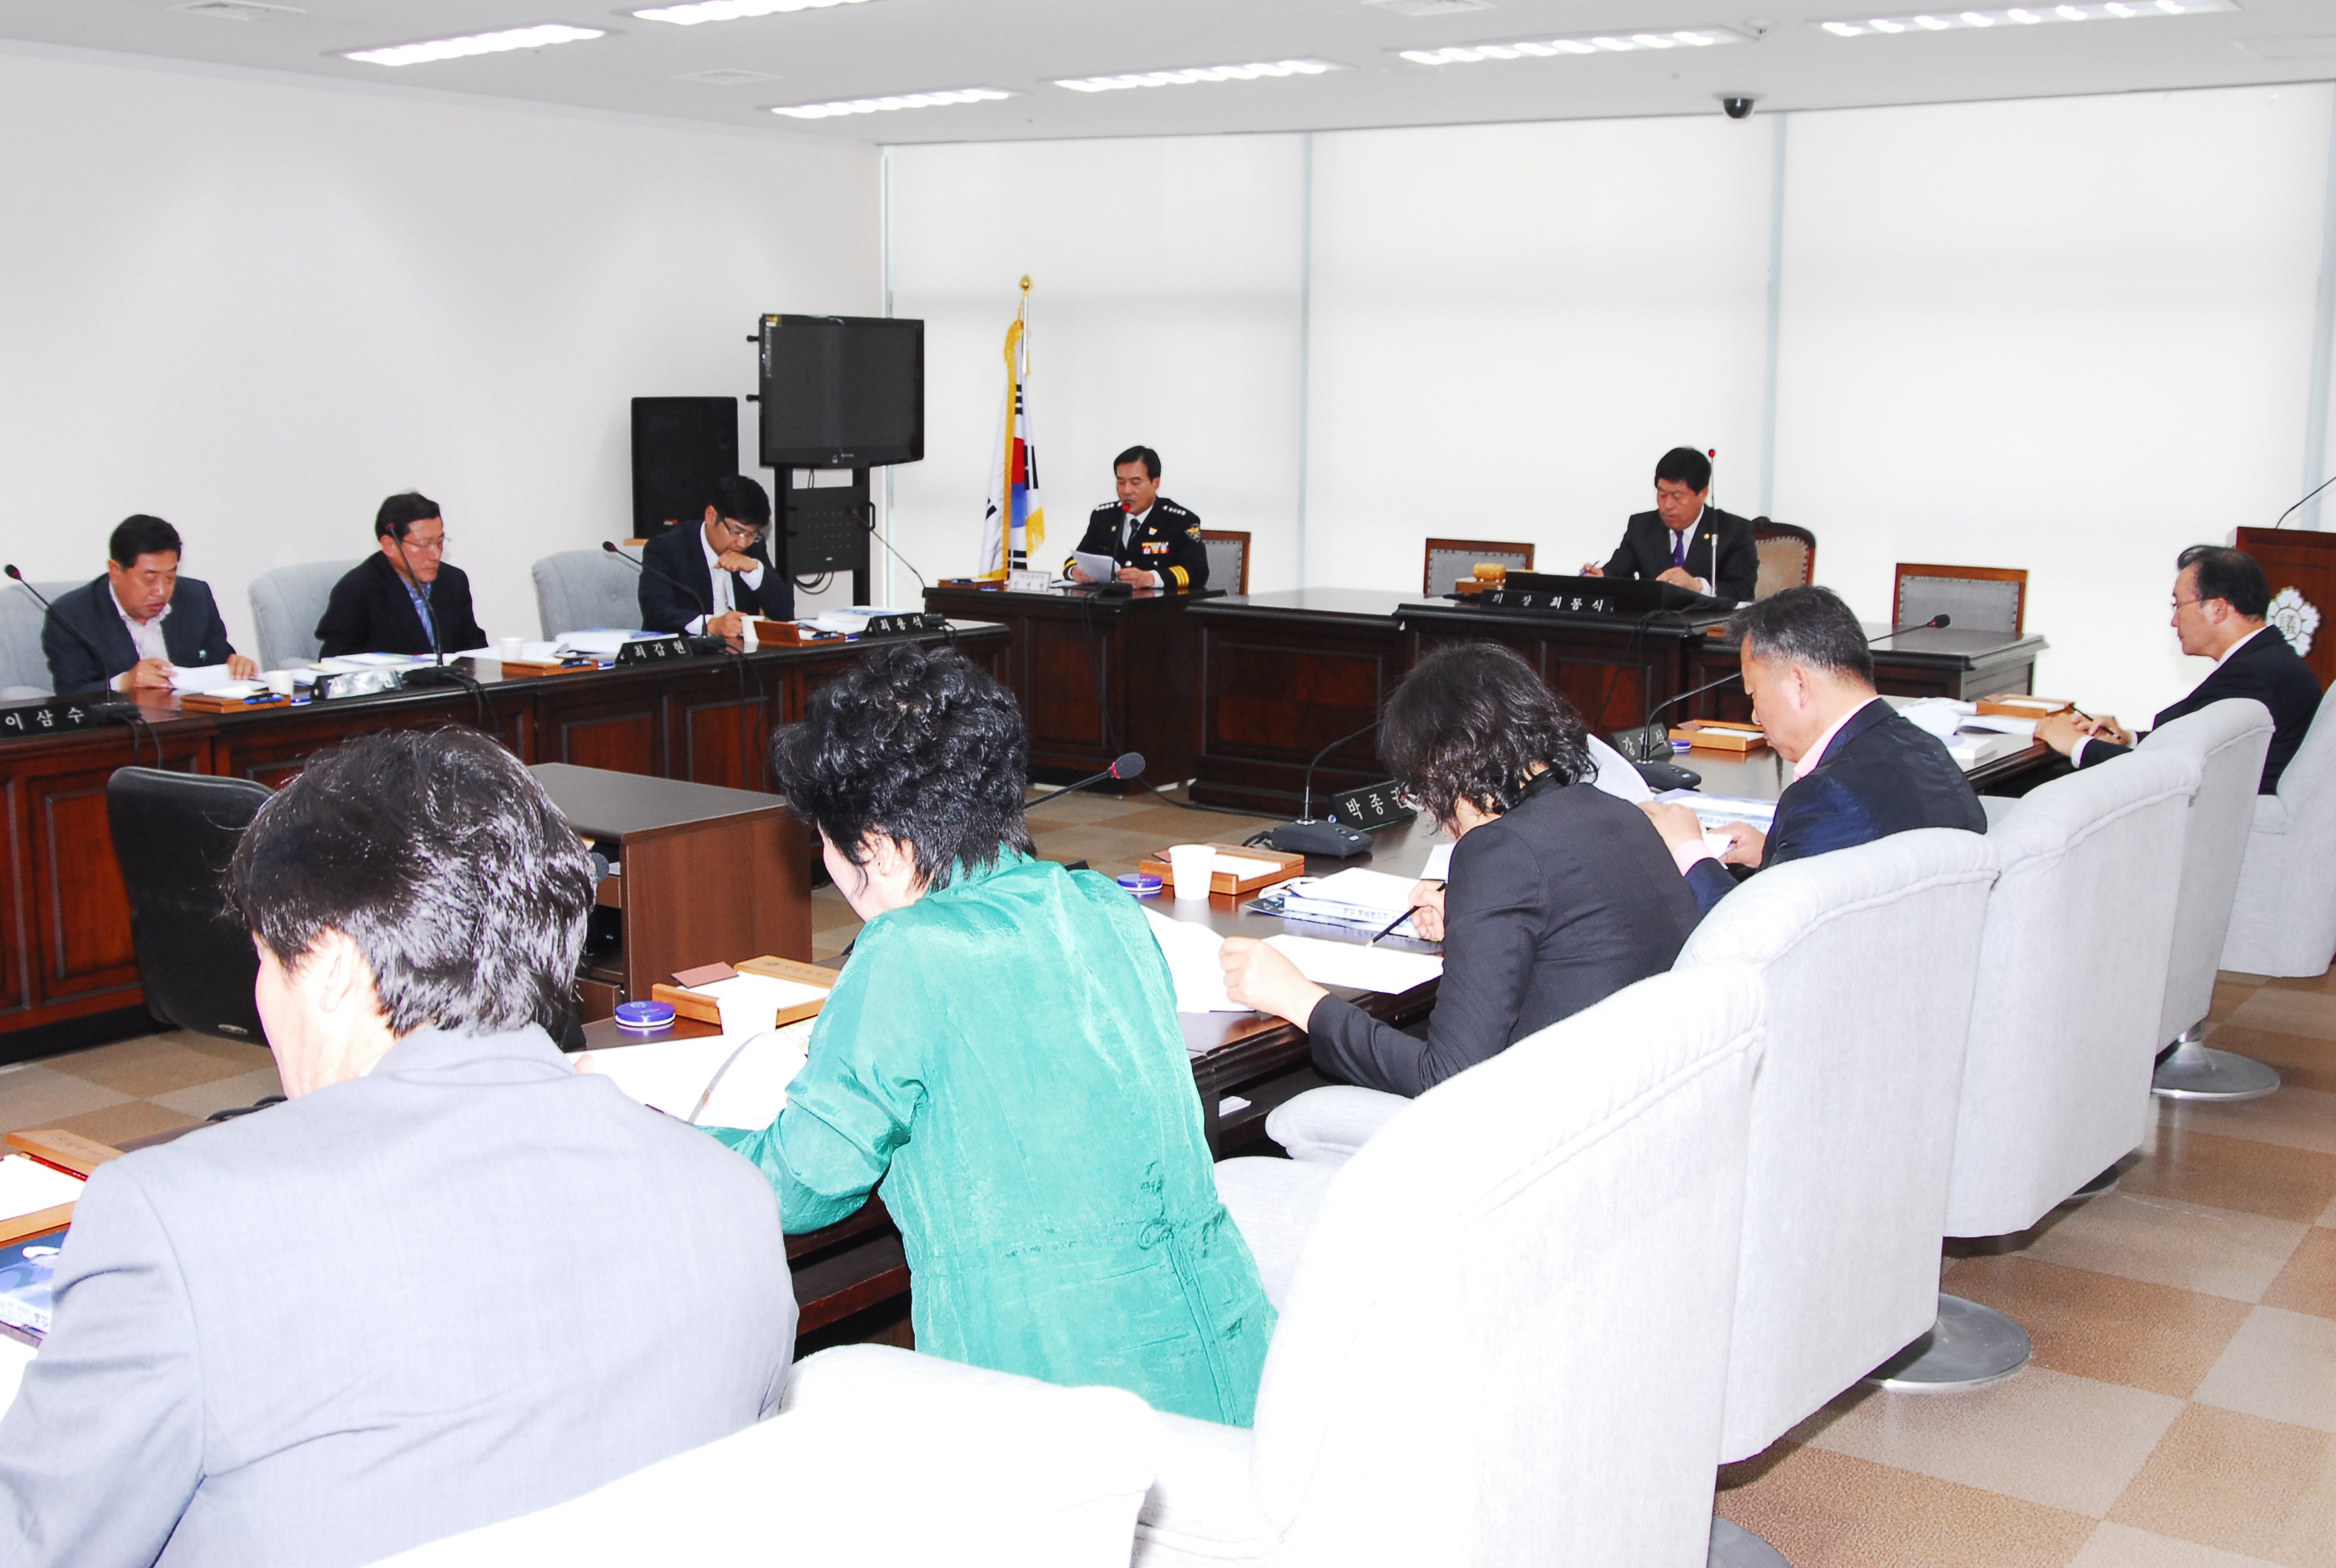 2011년 5월 의원 정례간담회 개최(2011. 5. 3) - 3